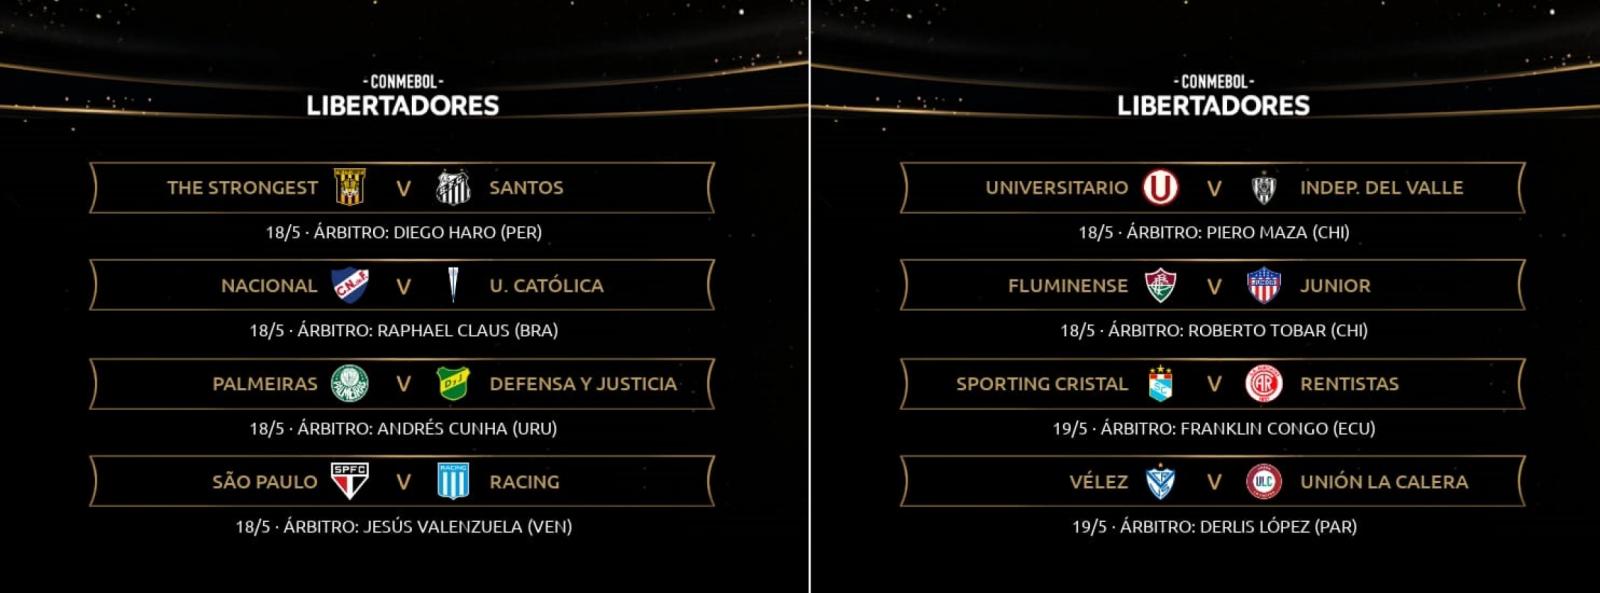 Imagen La lista de árbitros designados por Conmebol para la próxima semana.